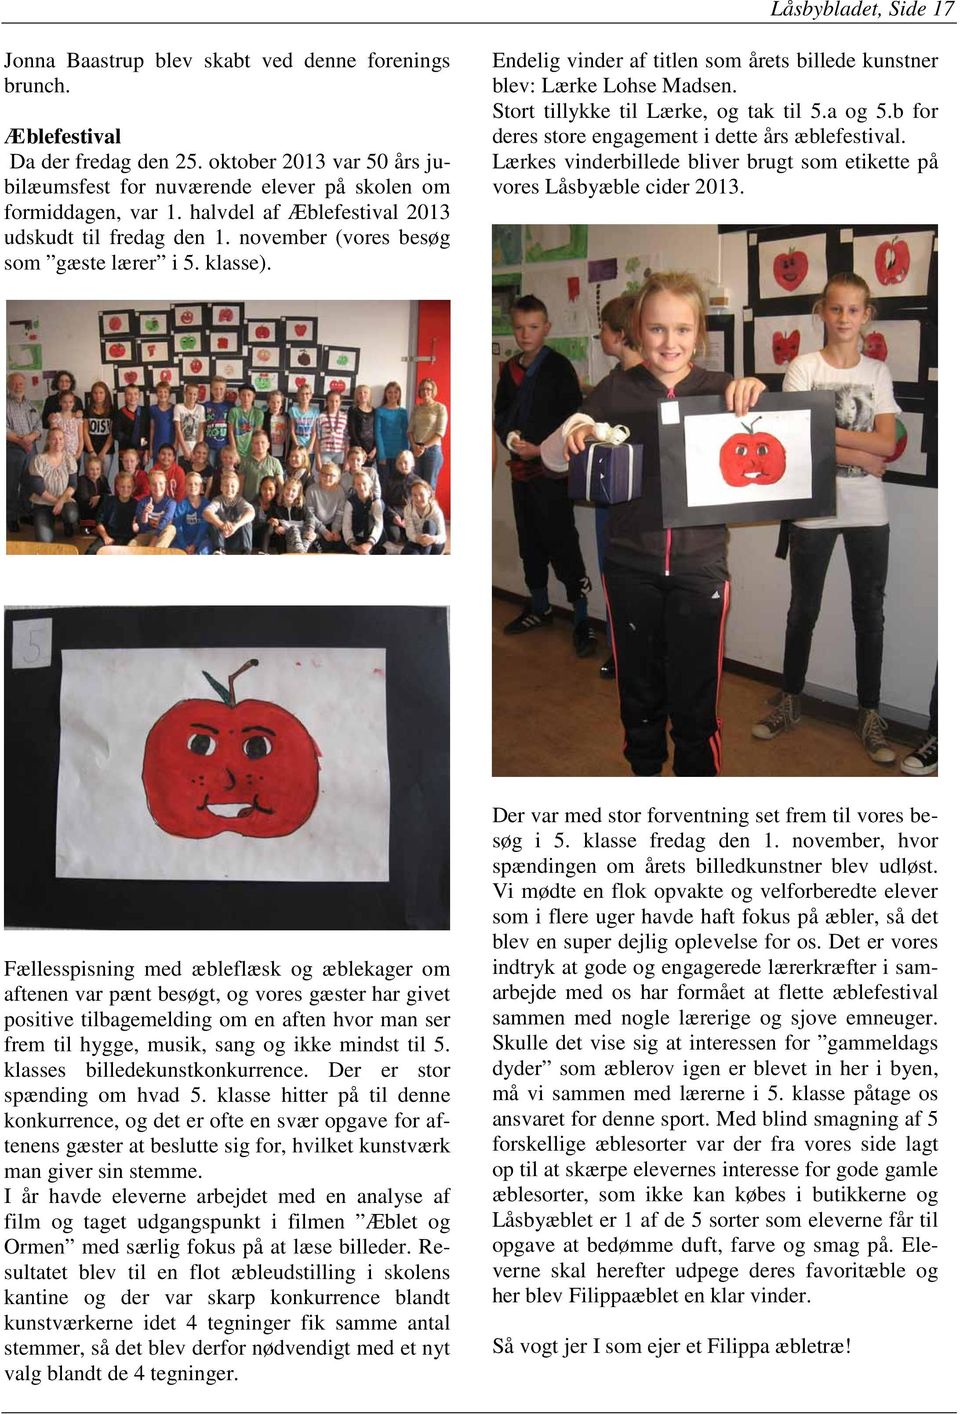 Endelig vinder af titlen som årets billede kunstner blev: Lærke Lohse Madsen. Stort tillykke til Lærke, og tak til 5.a og 5.b for deres store engagement i dette års æblefestival.